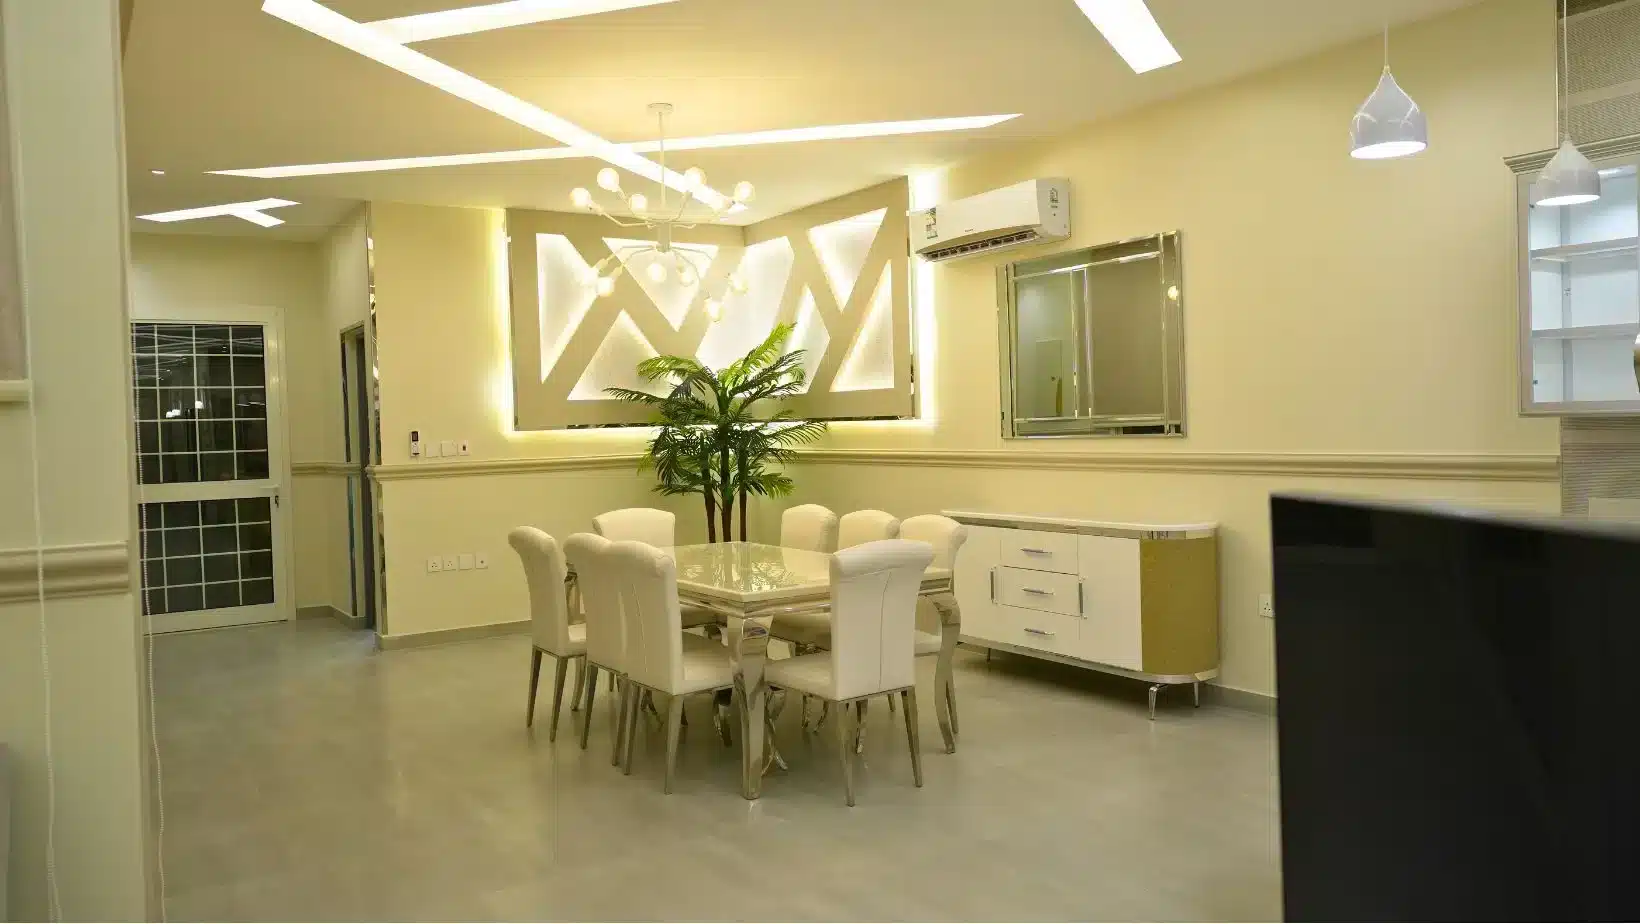 شقق الواحة بالسليمانية للإيجار بالرياض، Oasis apartments in Sulymaniah for rent in Riyadh